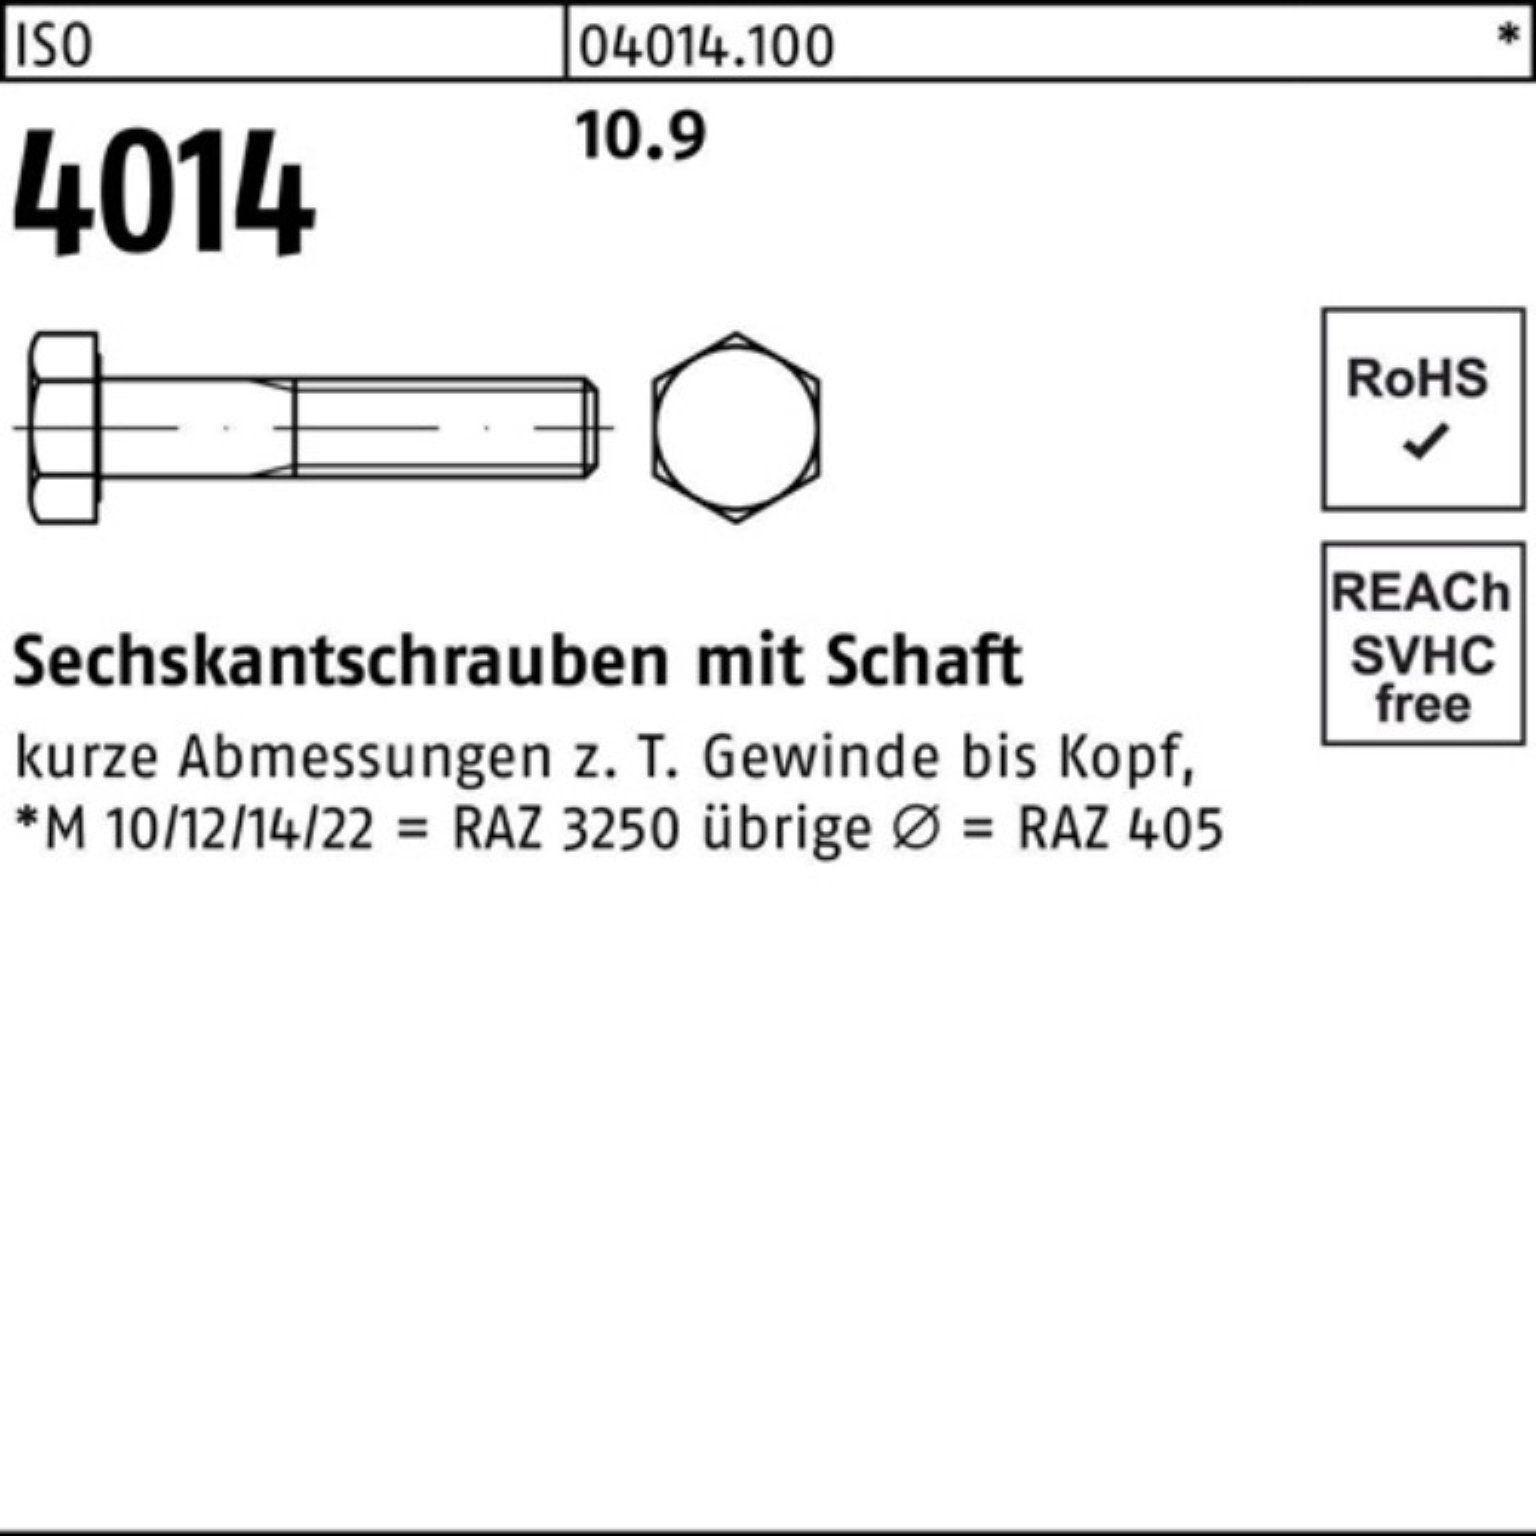 210 4014 Schaft Sechskantschraube M10x Stück Pack I 100er ISO 10.9 Sechskantschraube Bufab 25